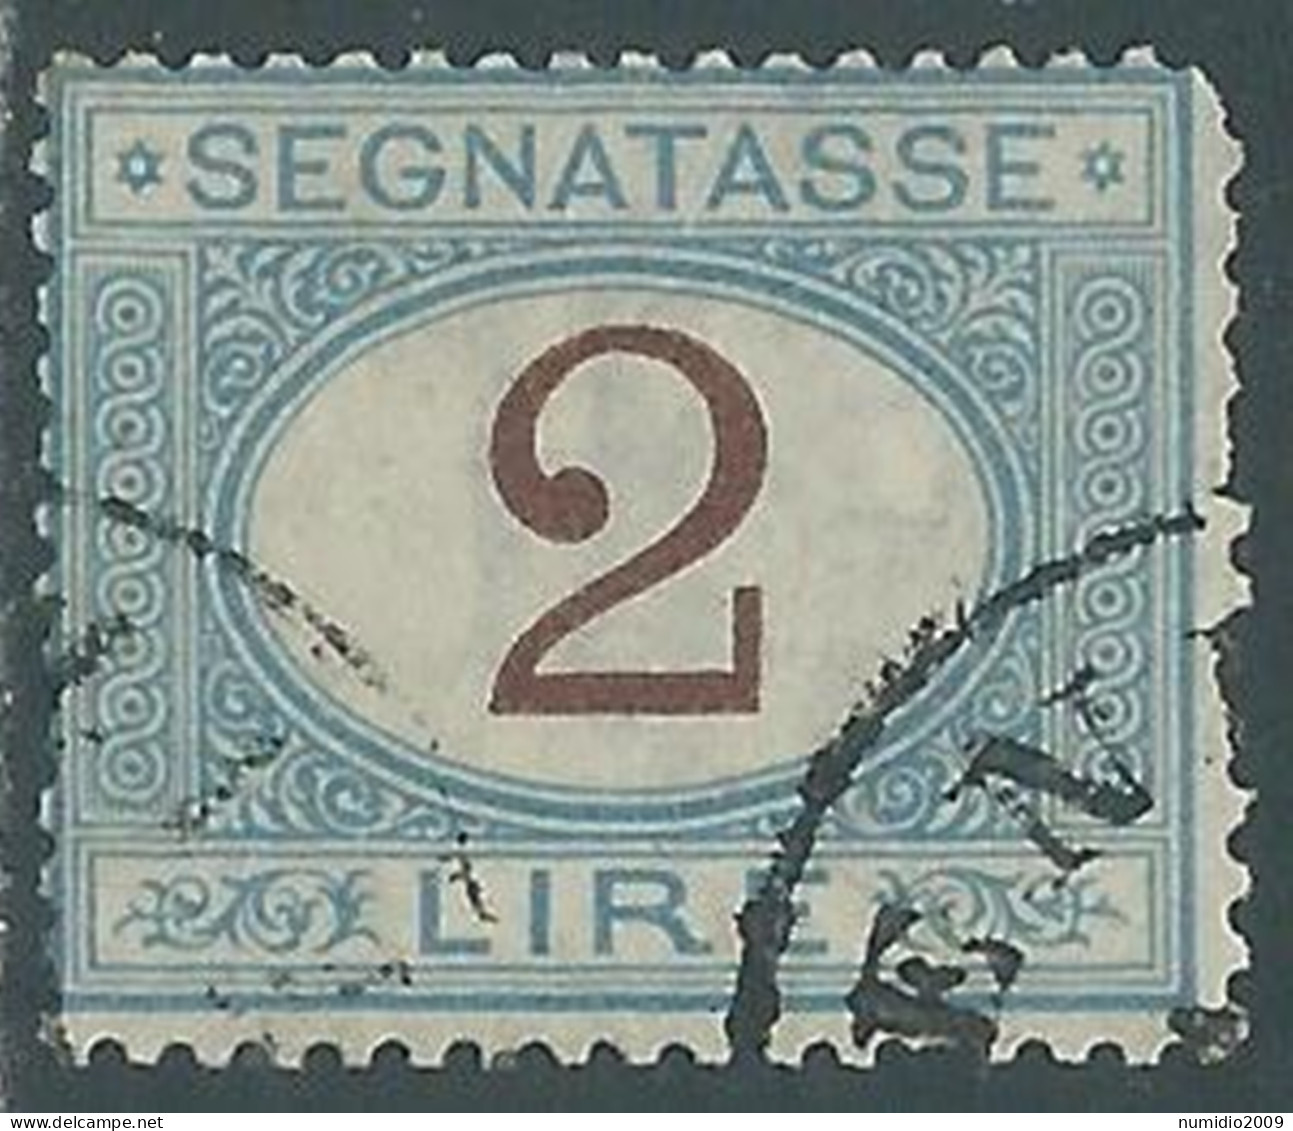 1870-74 REGNO SEGNATASSE USATO 2 LIRE - P12-2 - Taxe